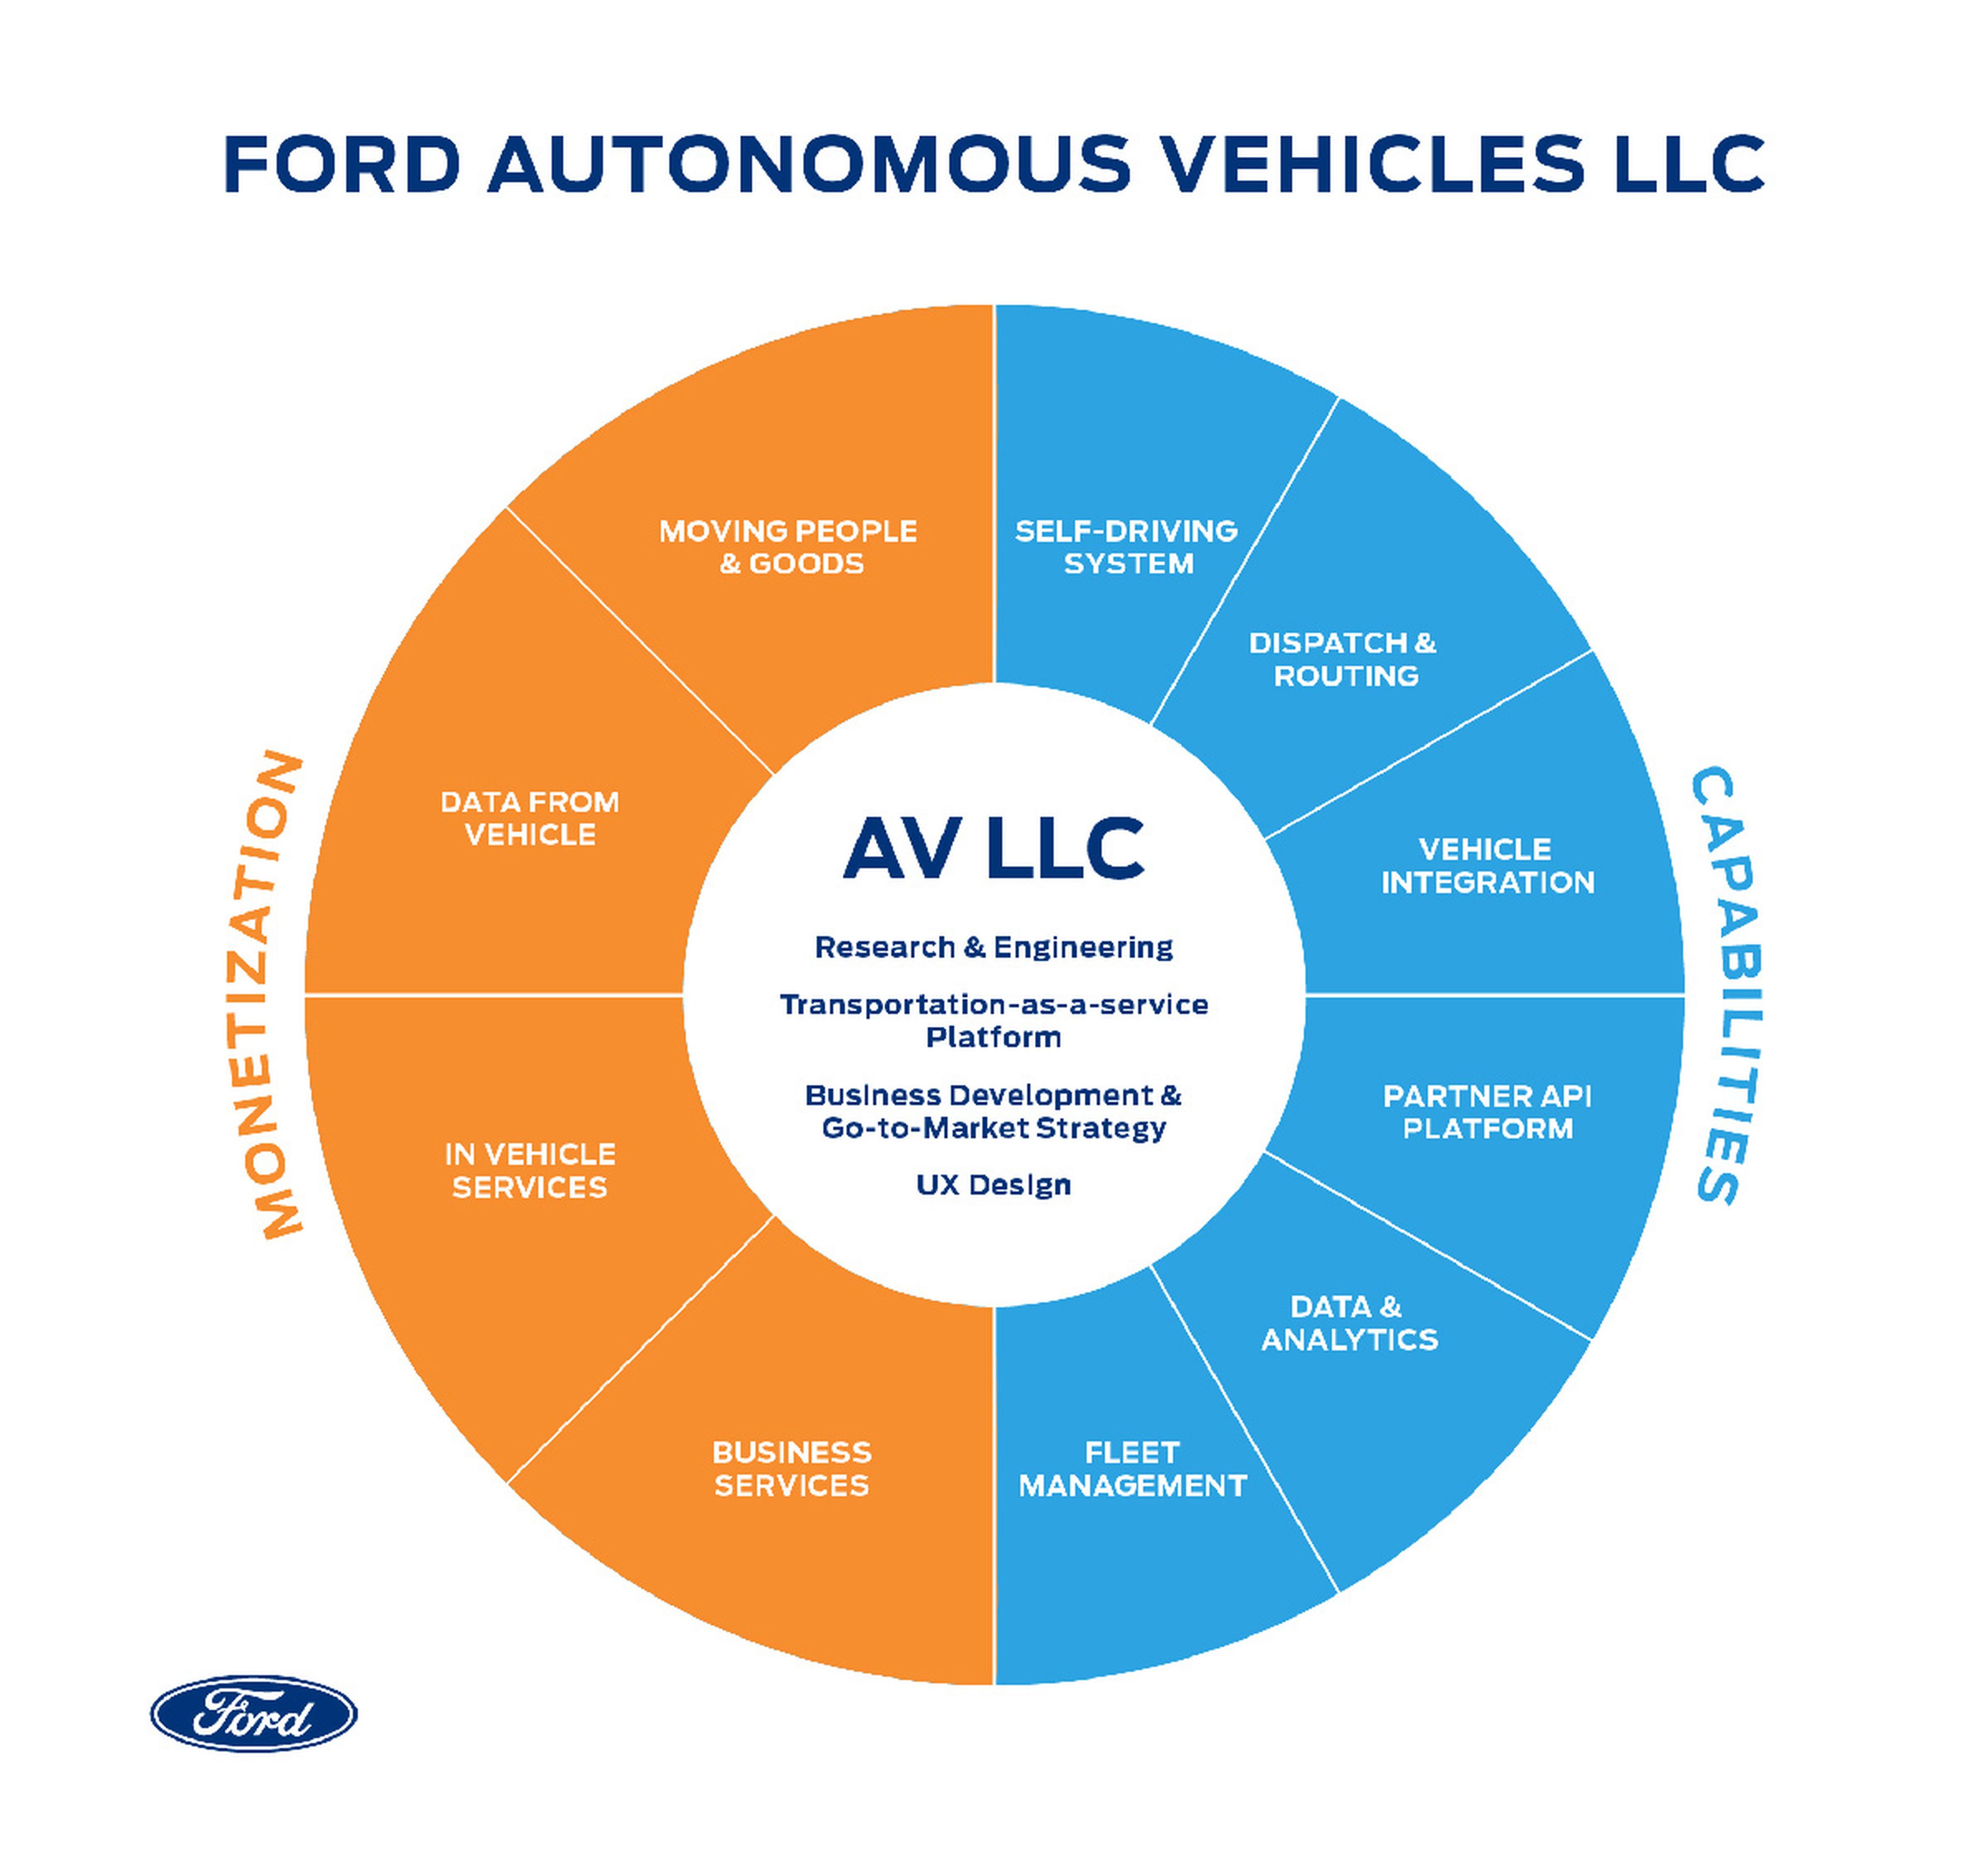 Así queda estructurada la unidad de vehículos autónomos de Ford.